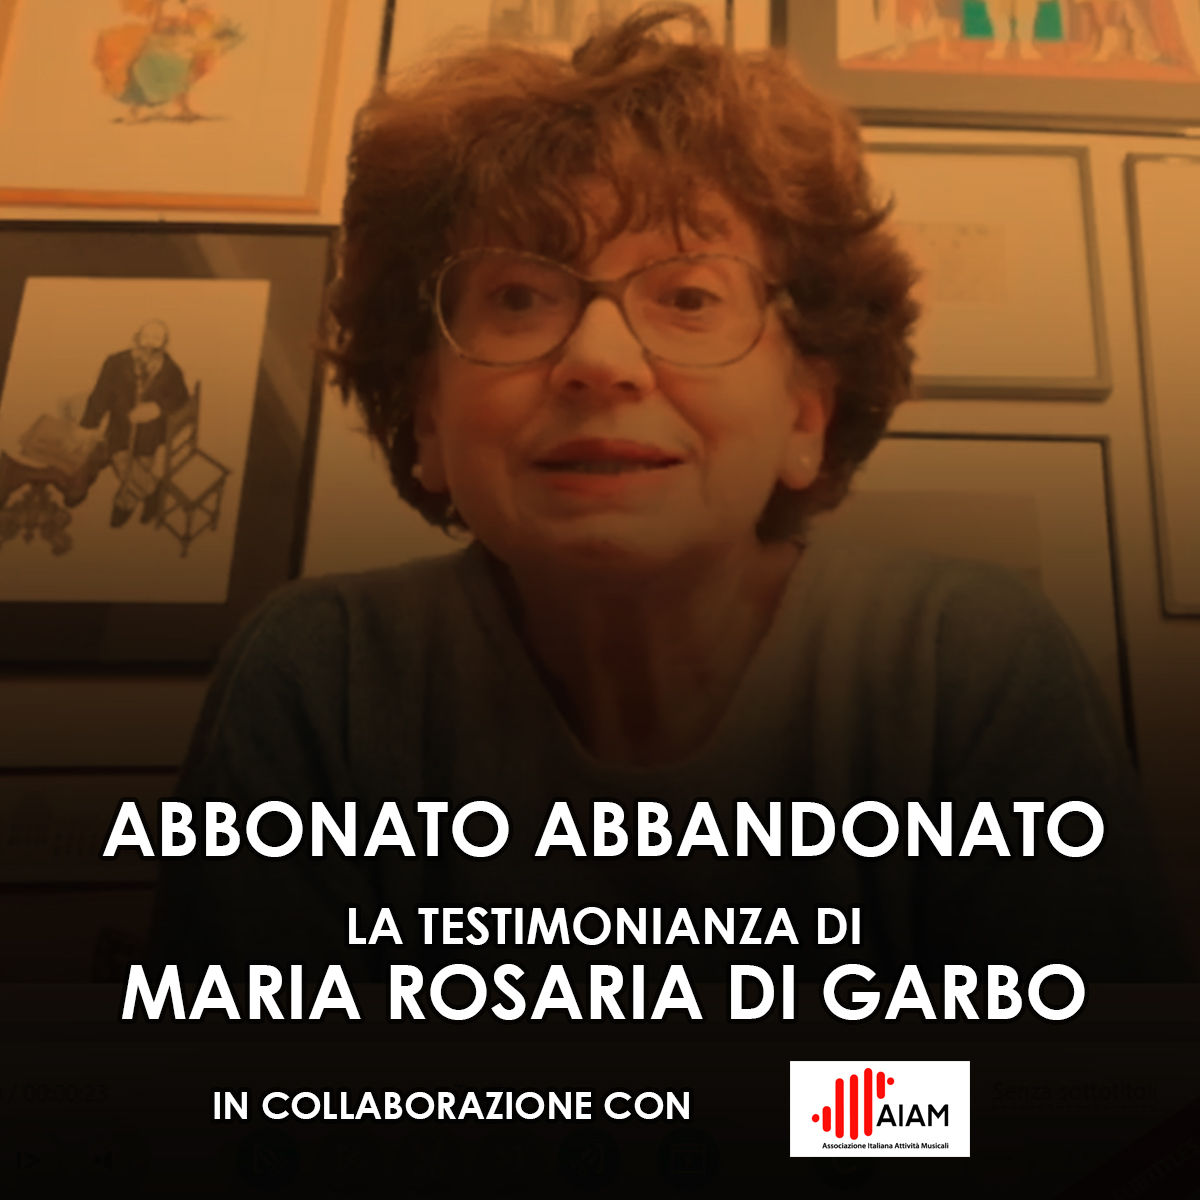 Abbonato Abbandonato: Maria Rosaria di Garbo